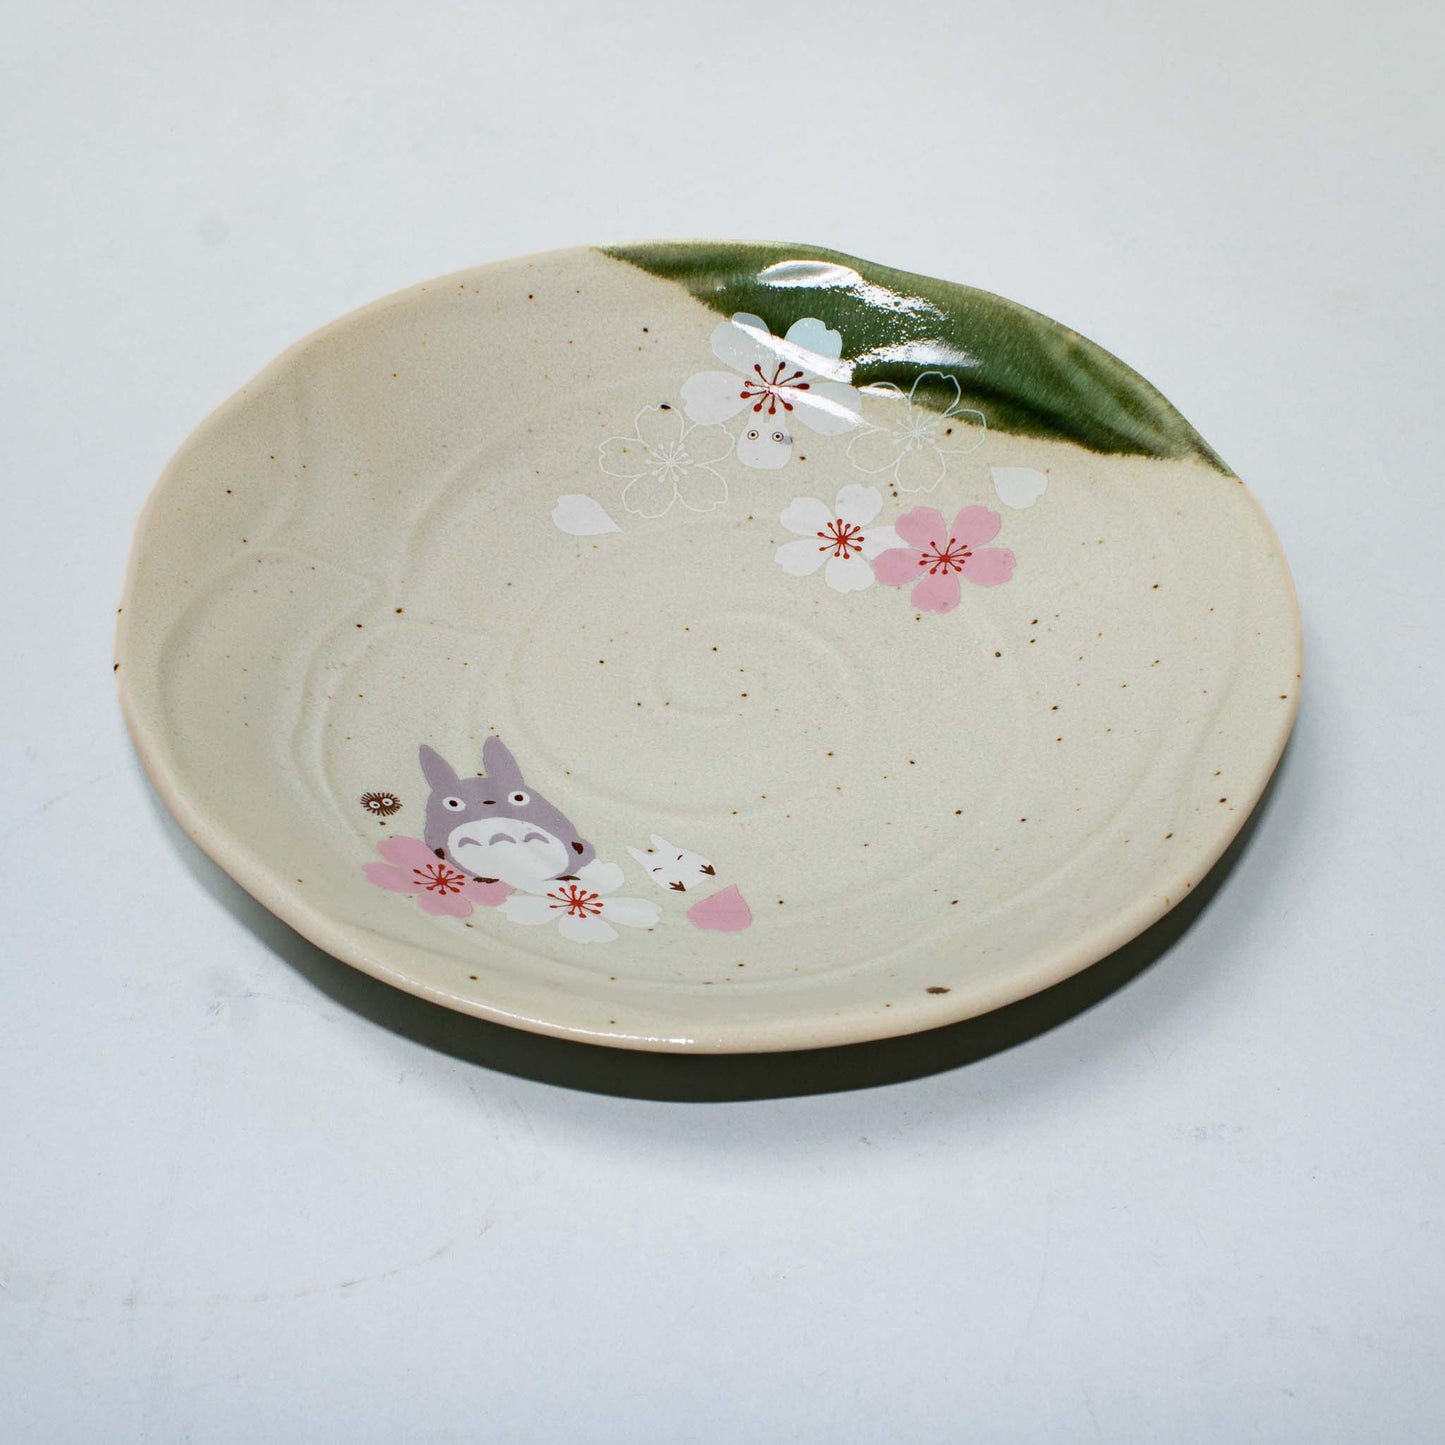 My Neighbor Totoro (Studio Ghibli) Sakura Cherry Blossom Ceramic Dinner Plate